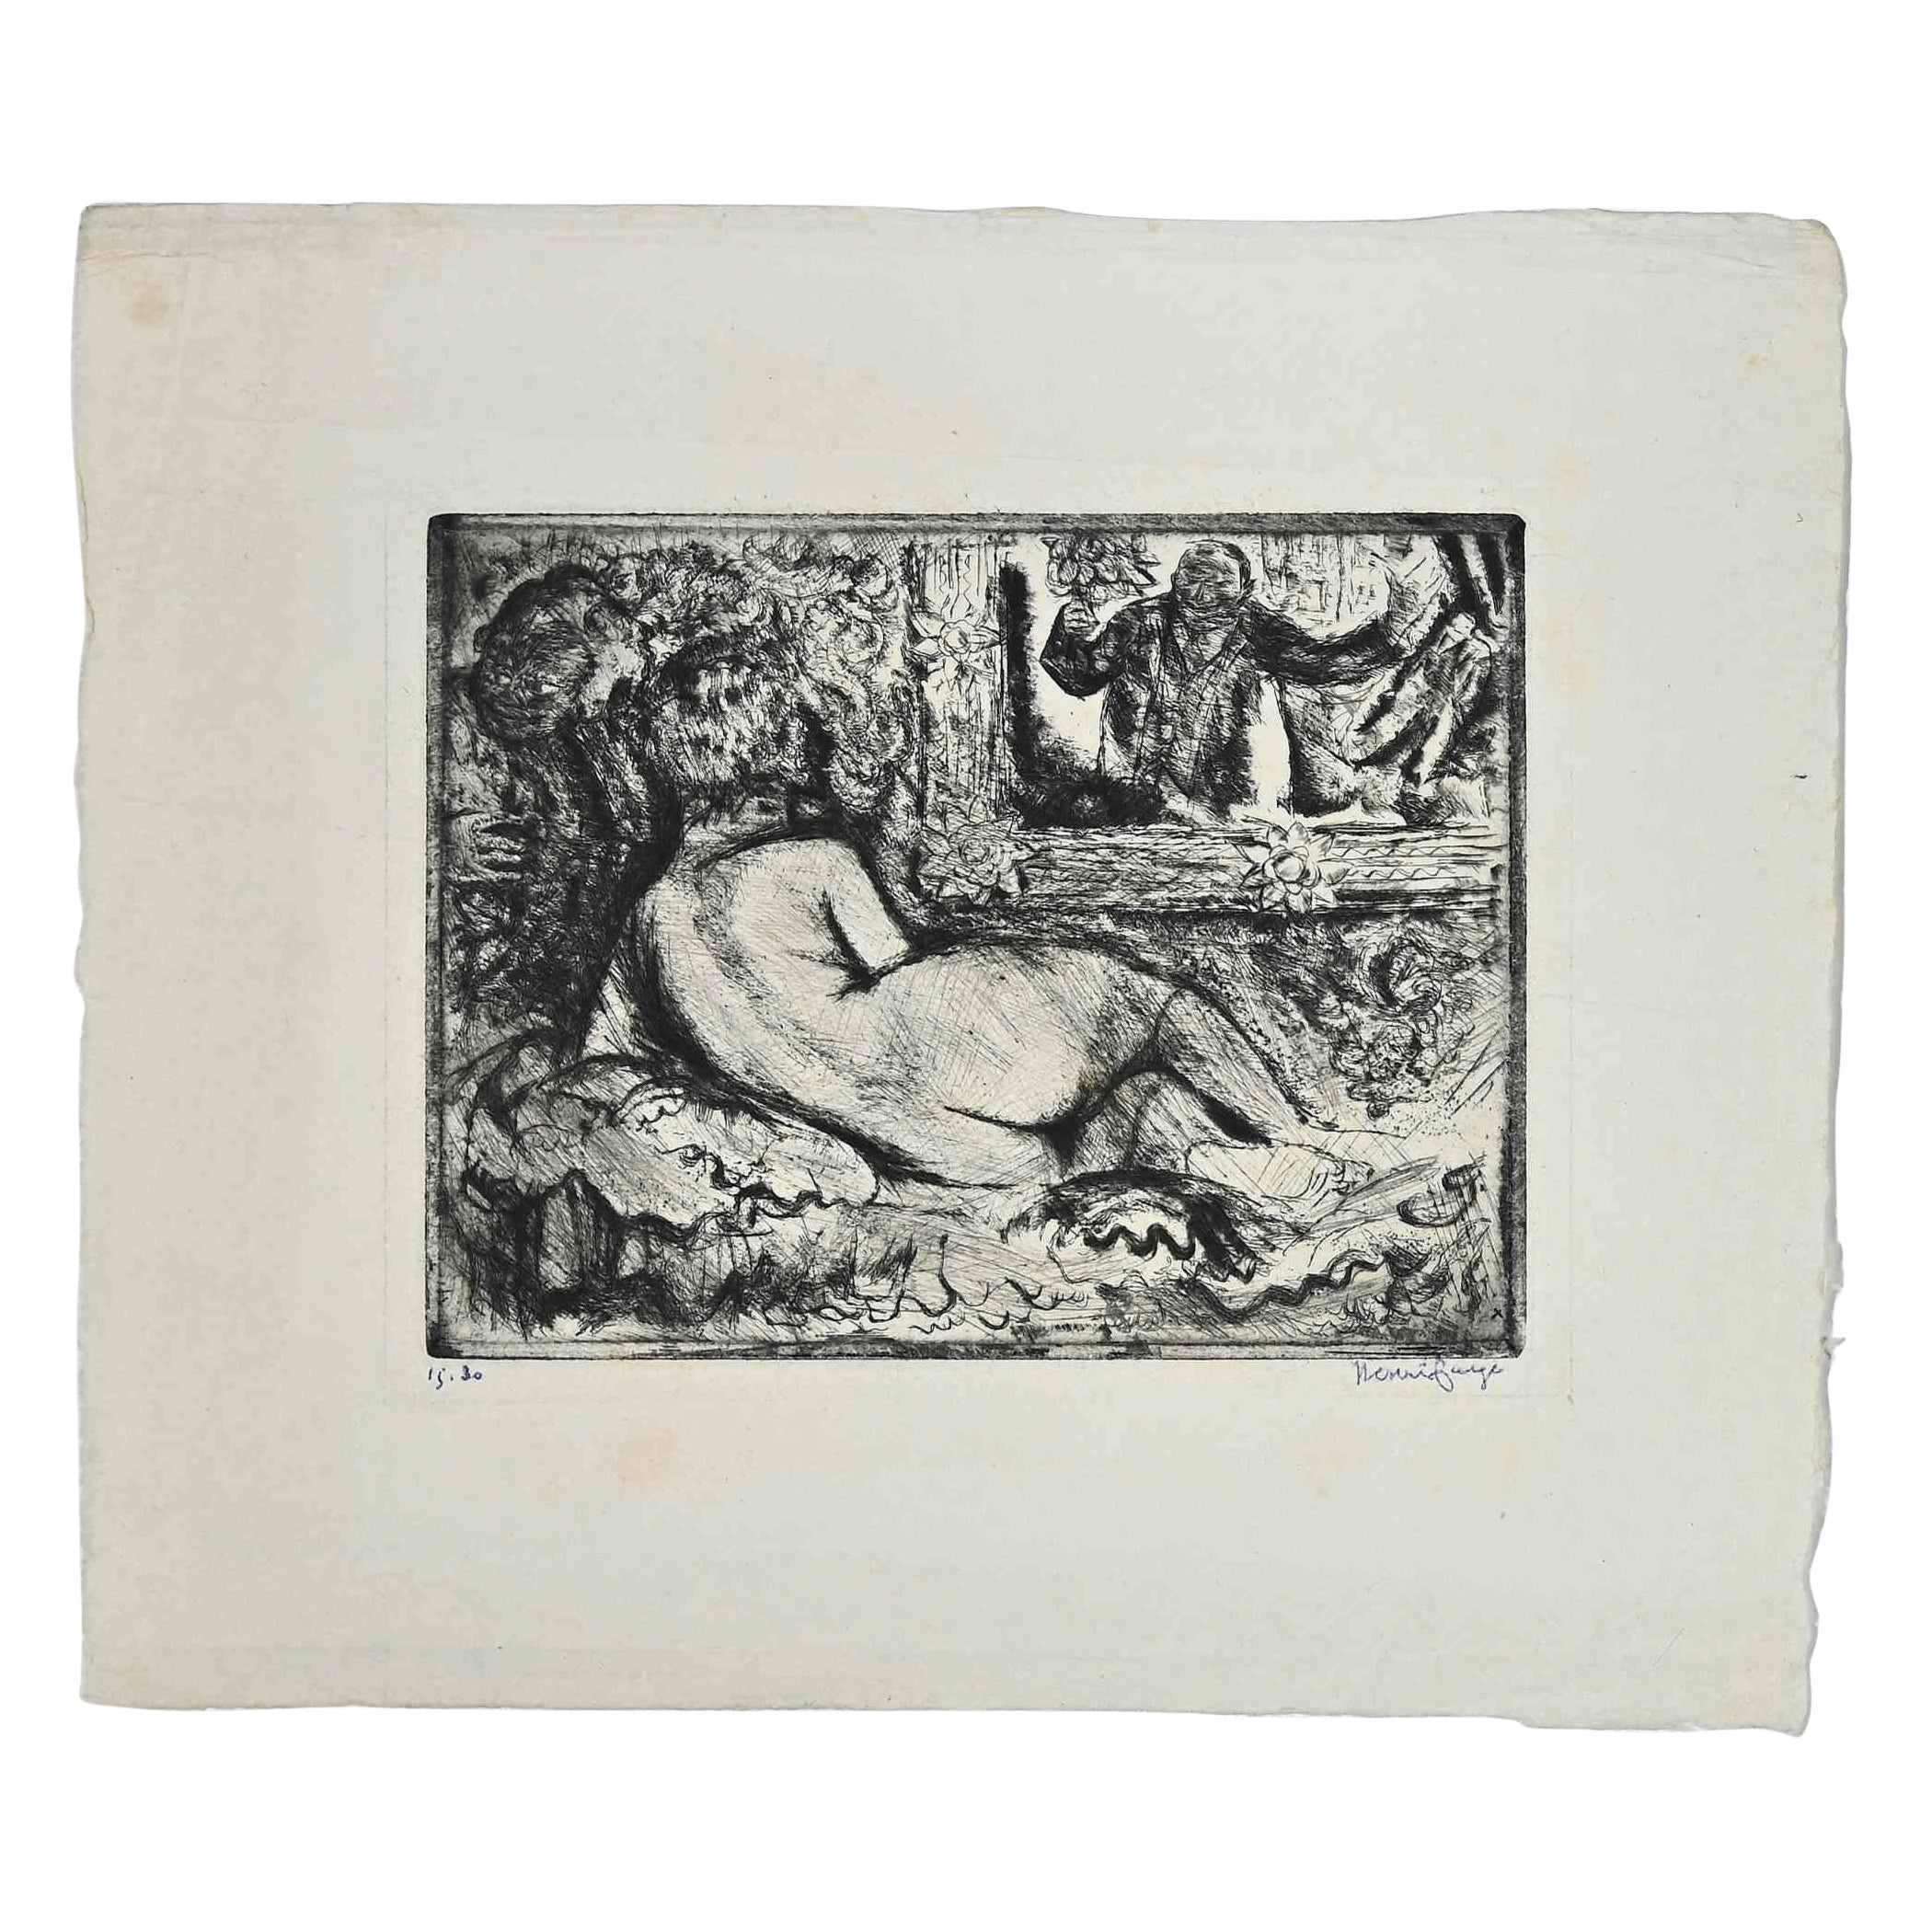 Nu de dos est une œuvre d'art moderne originale réalisée dans les premières décennies du 20e siècle par l'artiste français  Henri Farge  (1884-1970).

Gravure originale sur papier ivoire. 

Signé à la main au stylo par l'artiste dans le coin